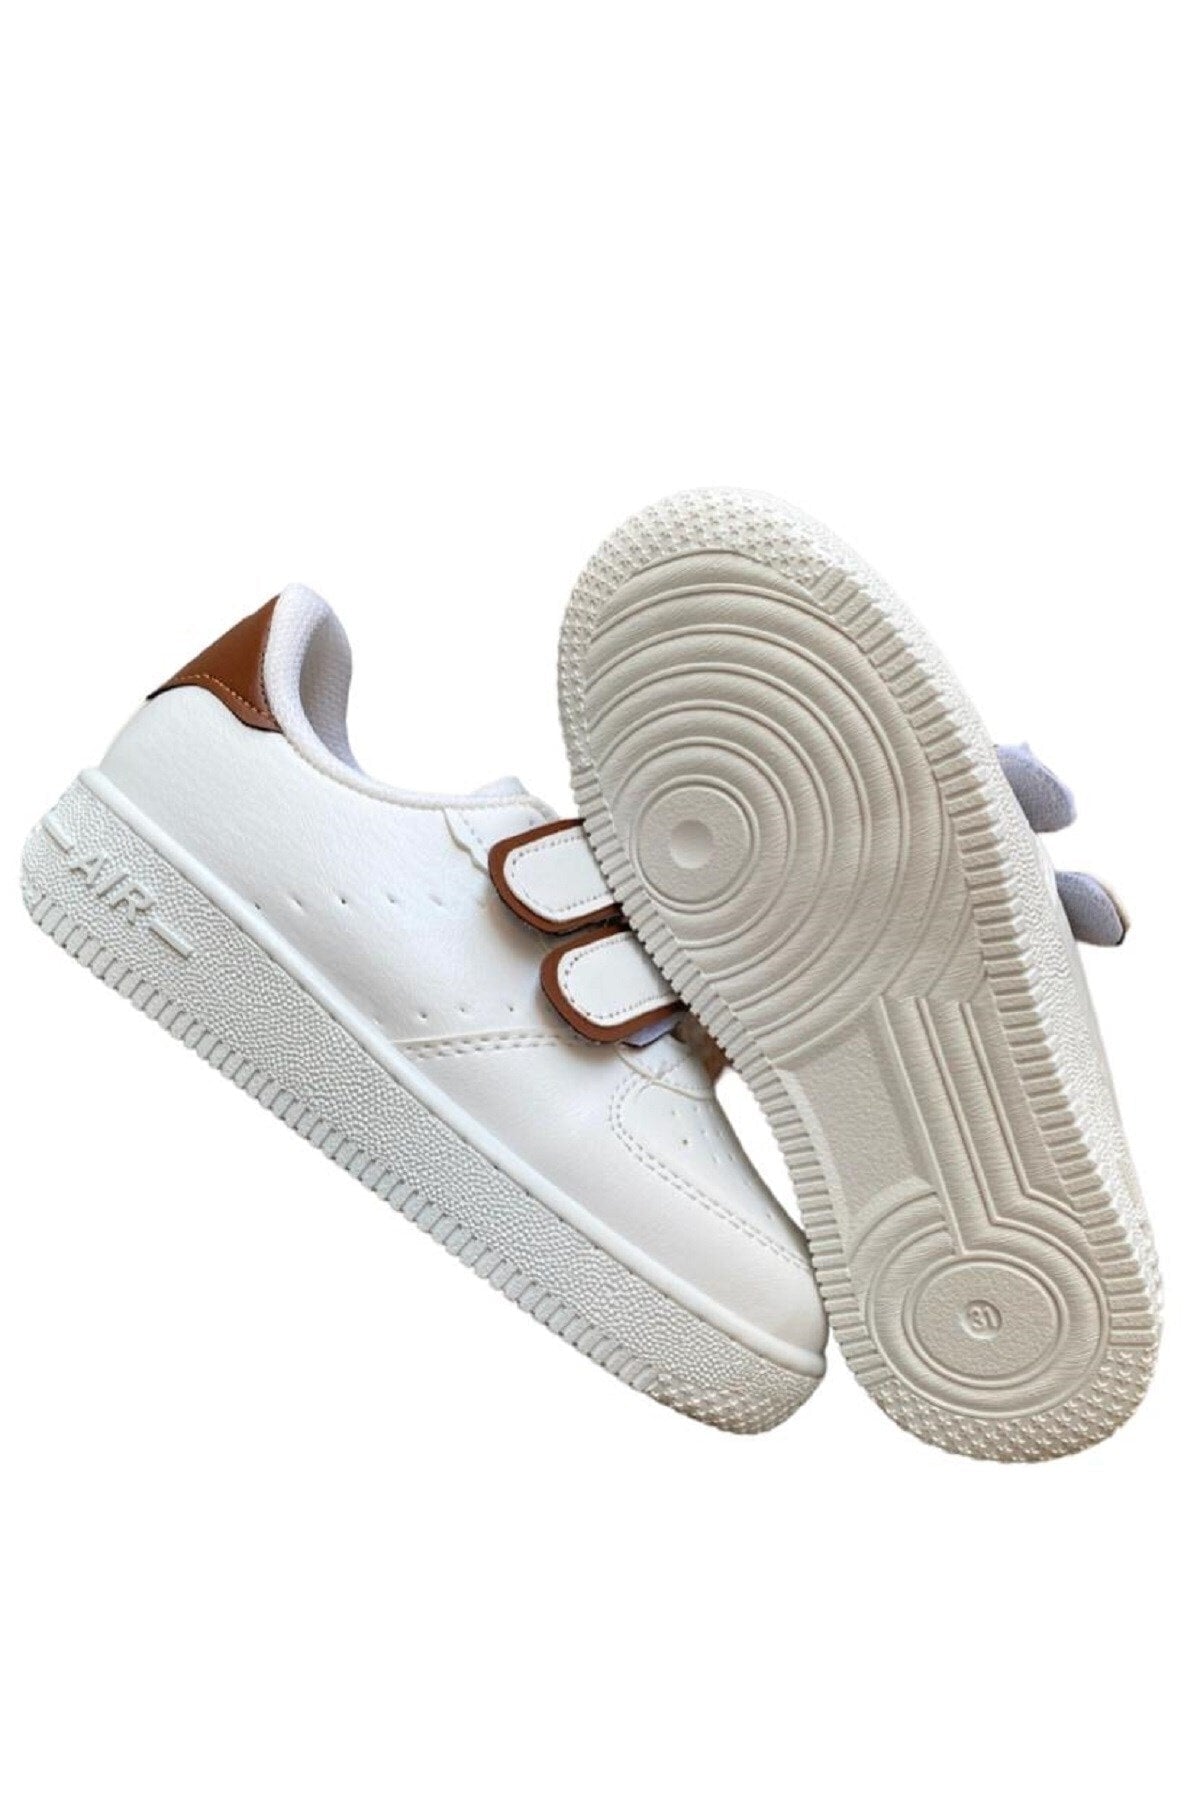 Unisex Girls Boys Velcro Sneakers Sneaker - White Brown